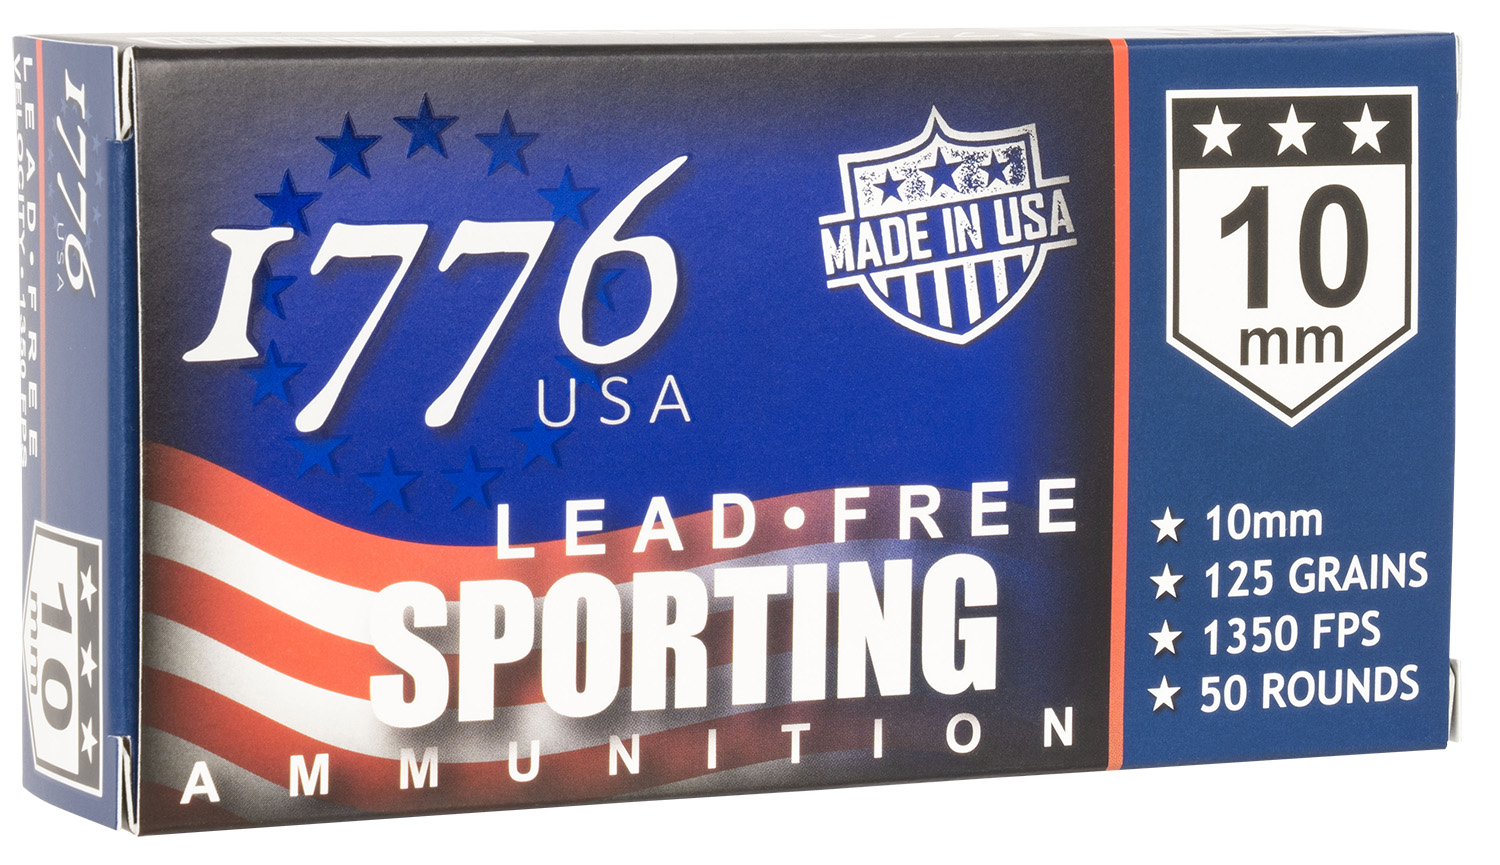 1776 USA 1776010115 Lead Free Sporting 10mm 125 gr Lead Free Ball 50 Per Box/20 Cs